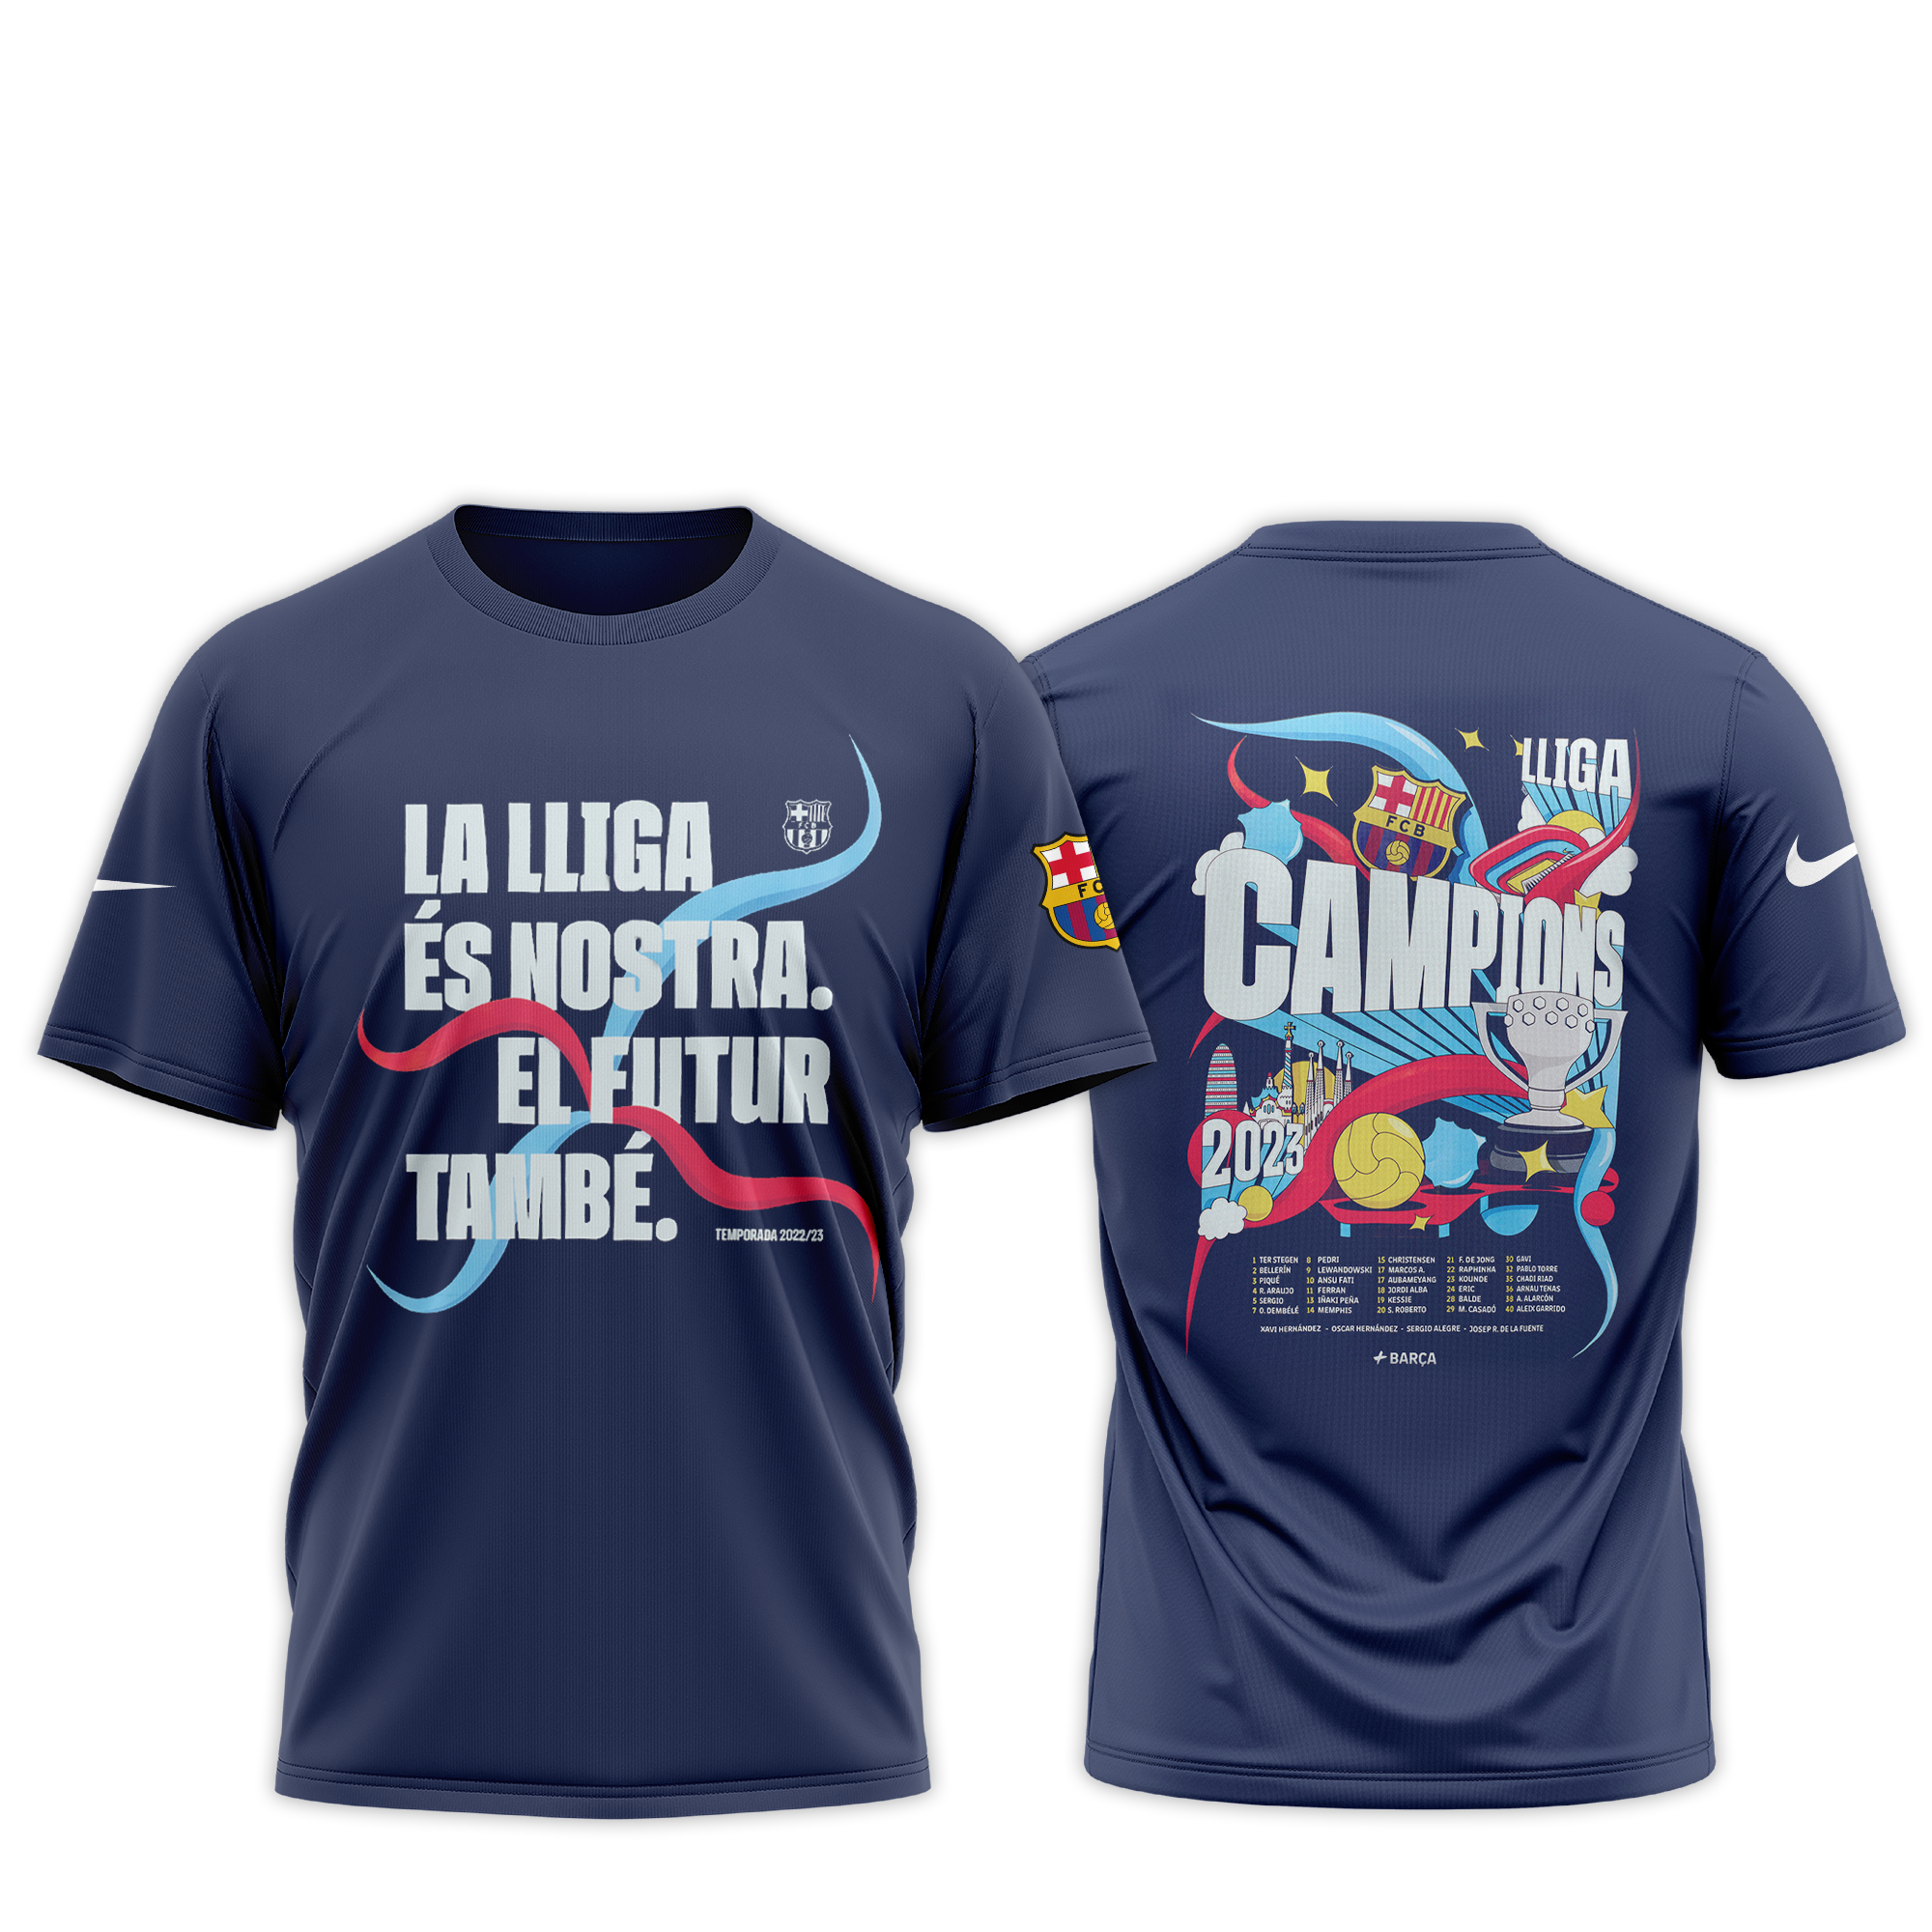 FC Barcelona 𝗖𝗔𝗠𝗣𝗘𝗢𝗡𝗘𝗦 𝗗𝗘 𝗟🏆𝗚𝗔 2023 New Sweatshirt